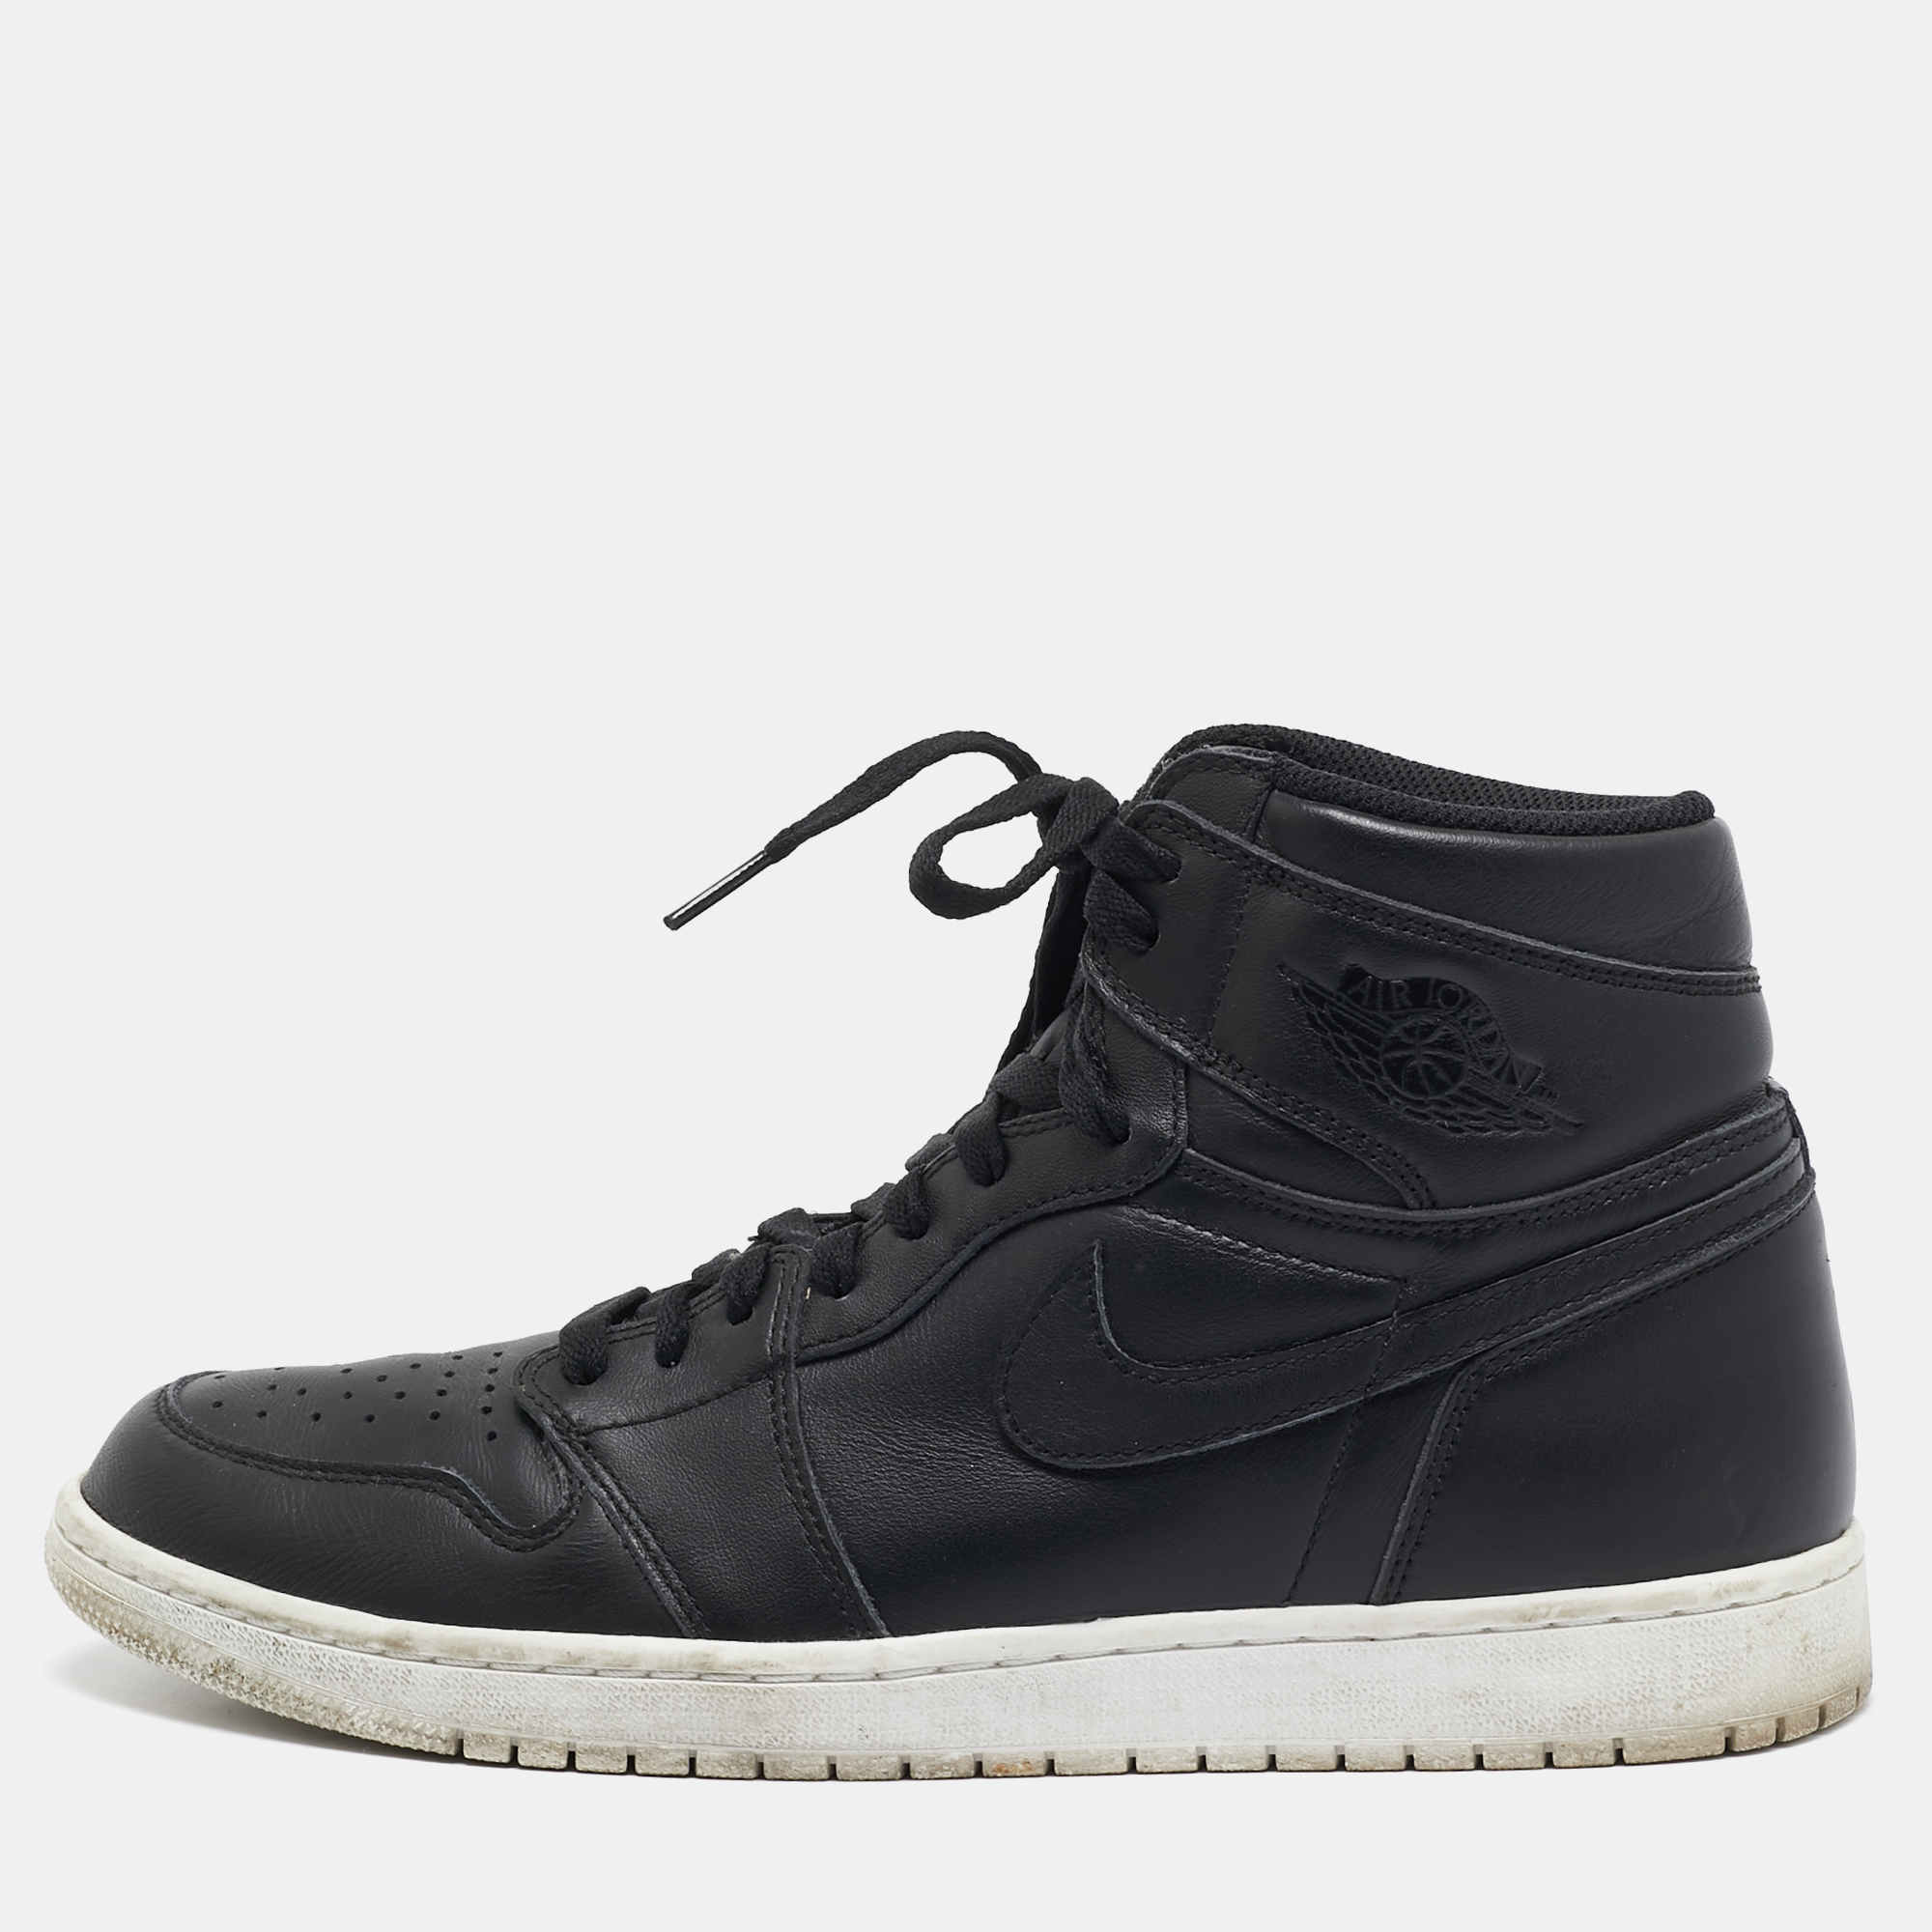 

Air Jordan x Nike Black Leather Air Jordan 1 Retro High Sneakers Size